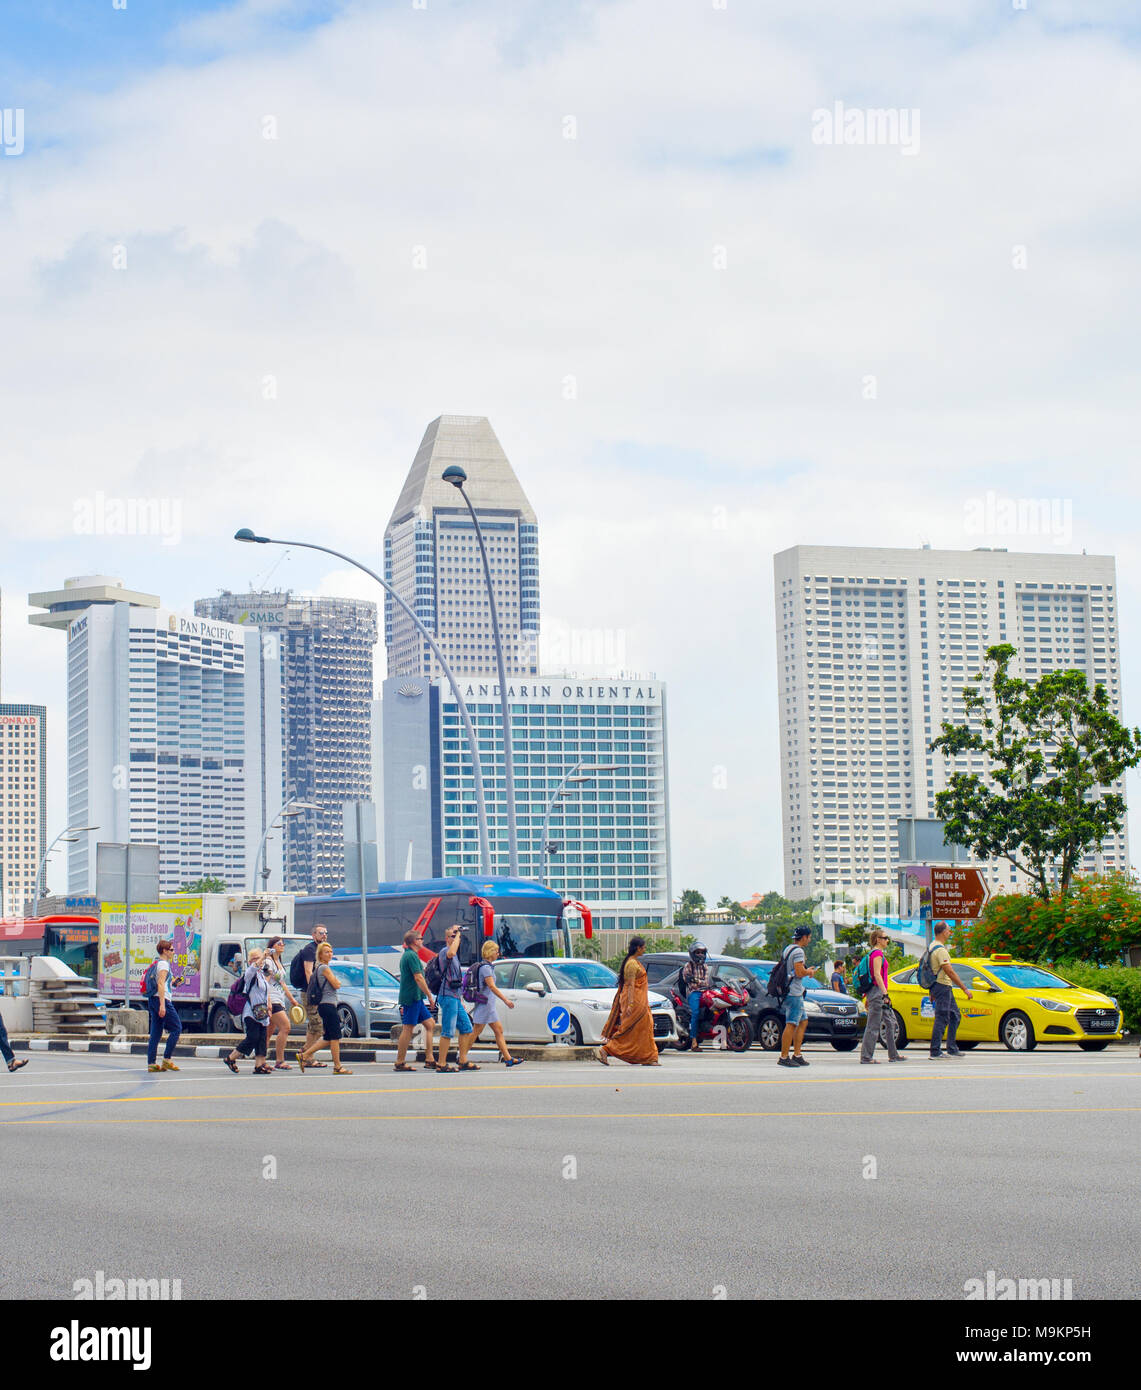 Singapour - Jan 14, 2017 : Les personnes qui traversent la route à Singapour. Singapour est un commerce mondial, la finance et le transport hub Banque D'Images